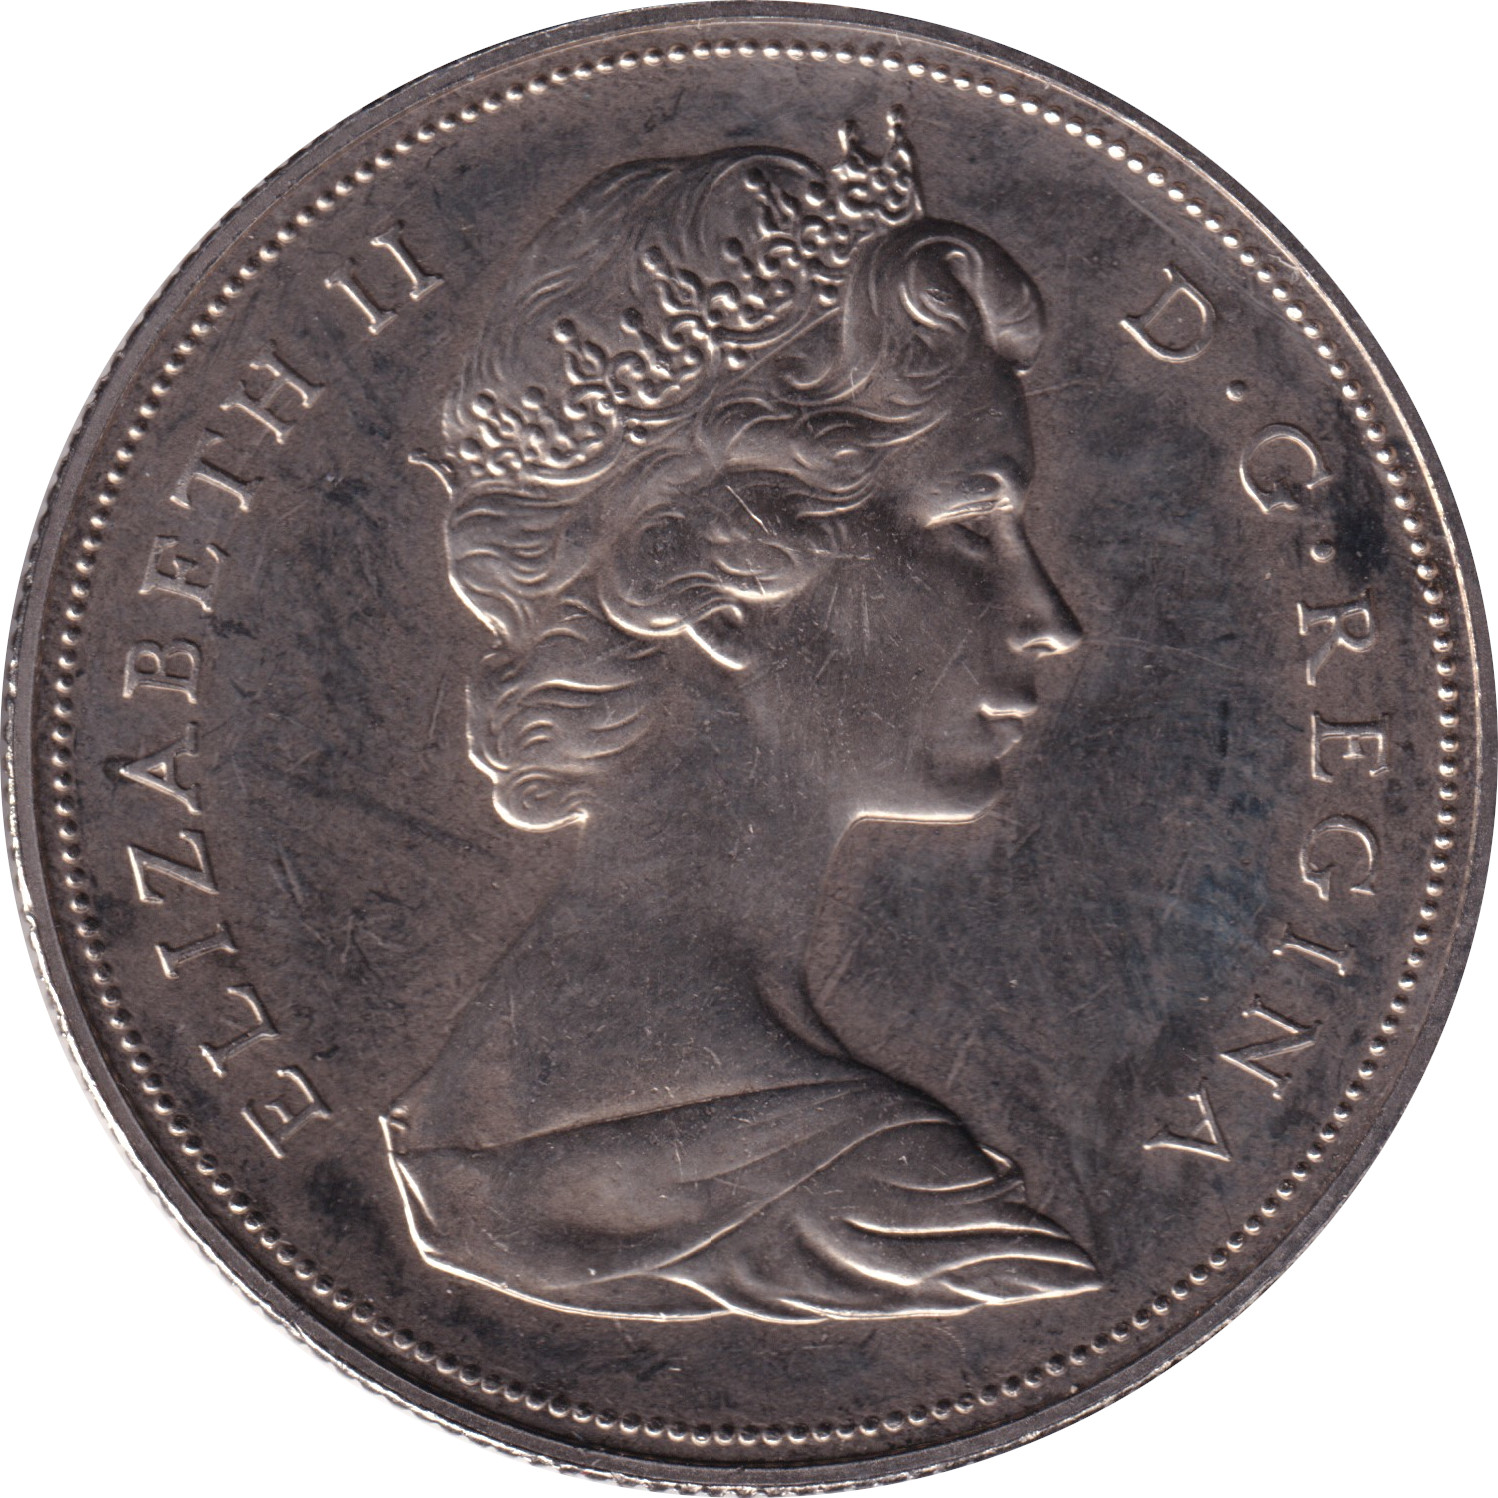 1 dollar - Colombie Britannique